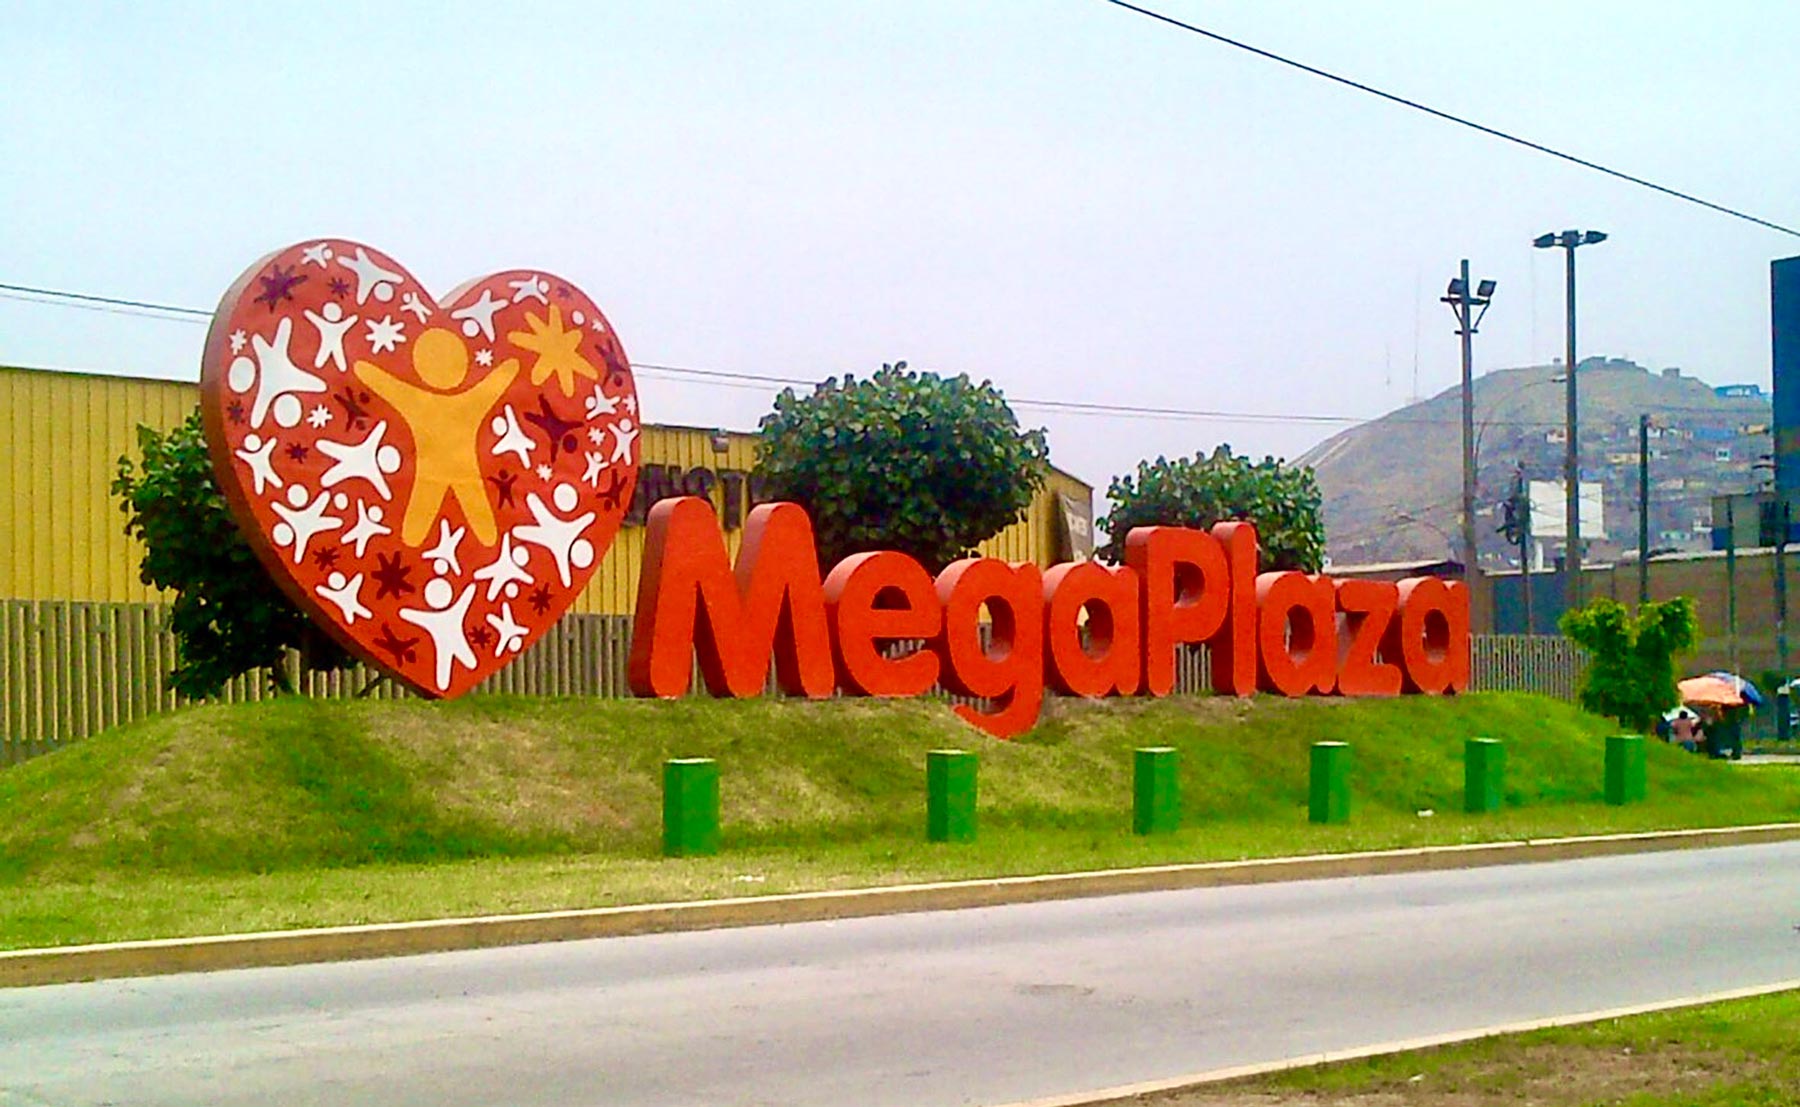 Megaplaza